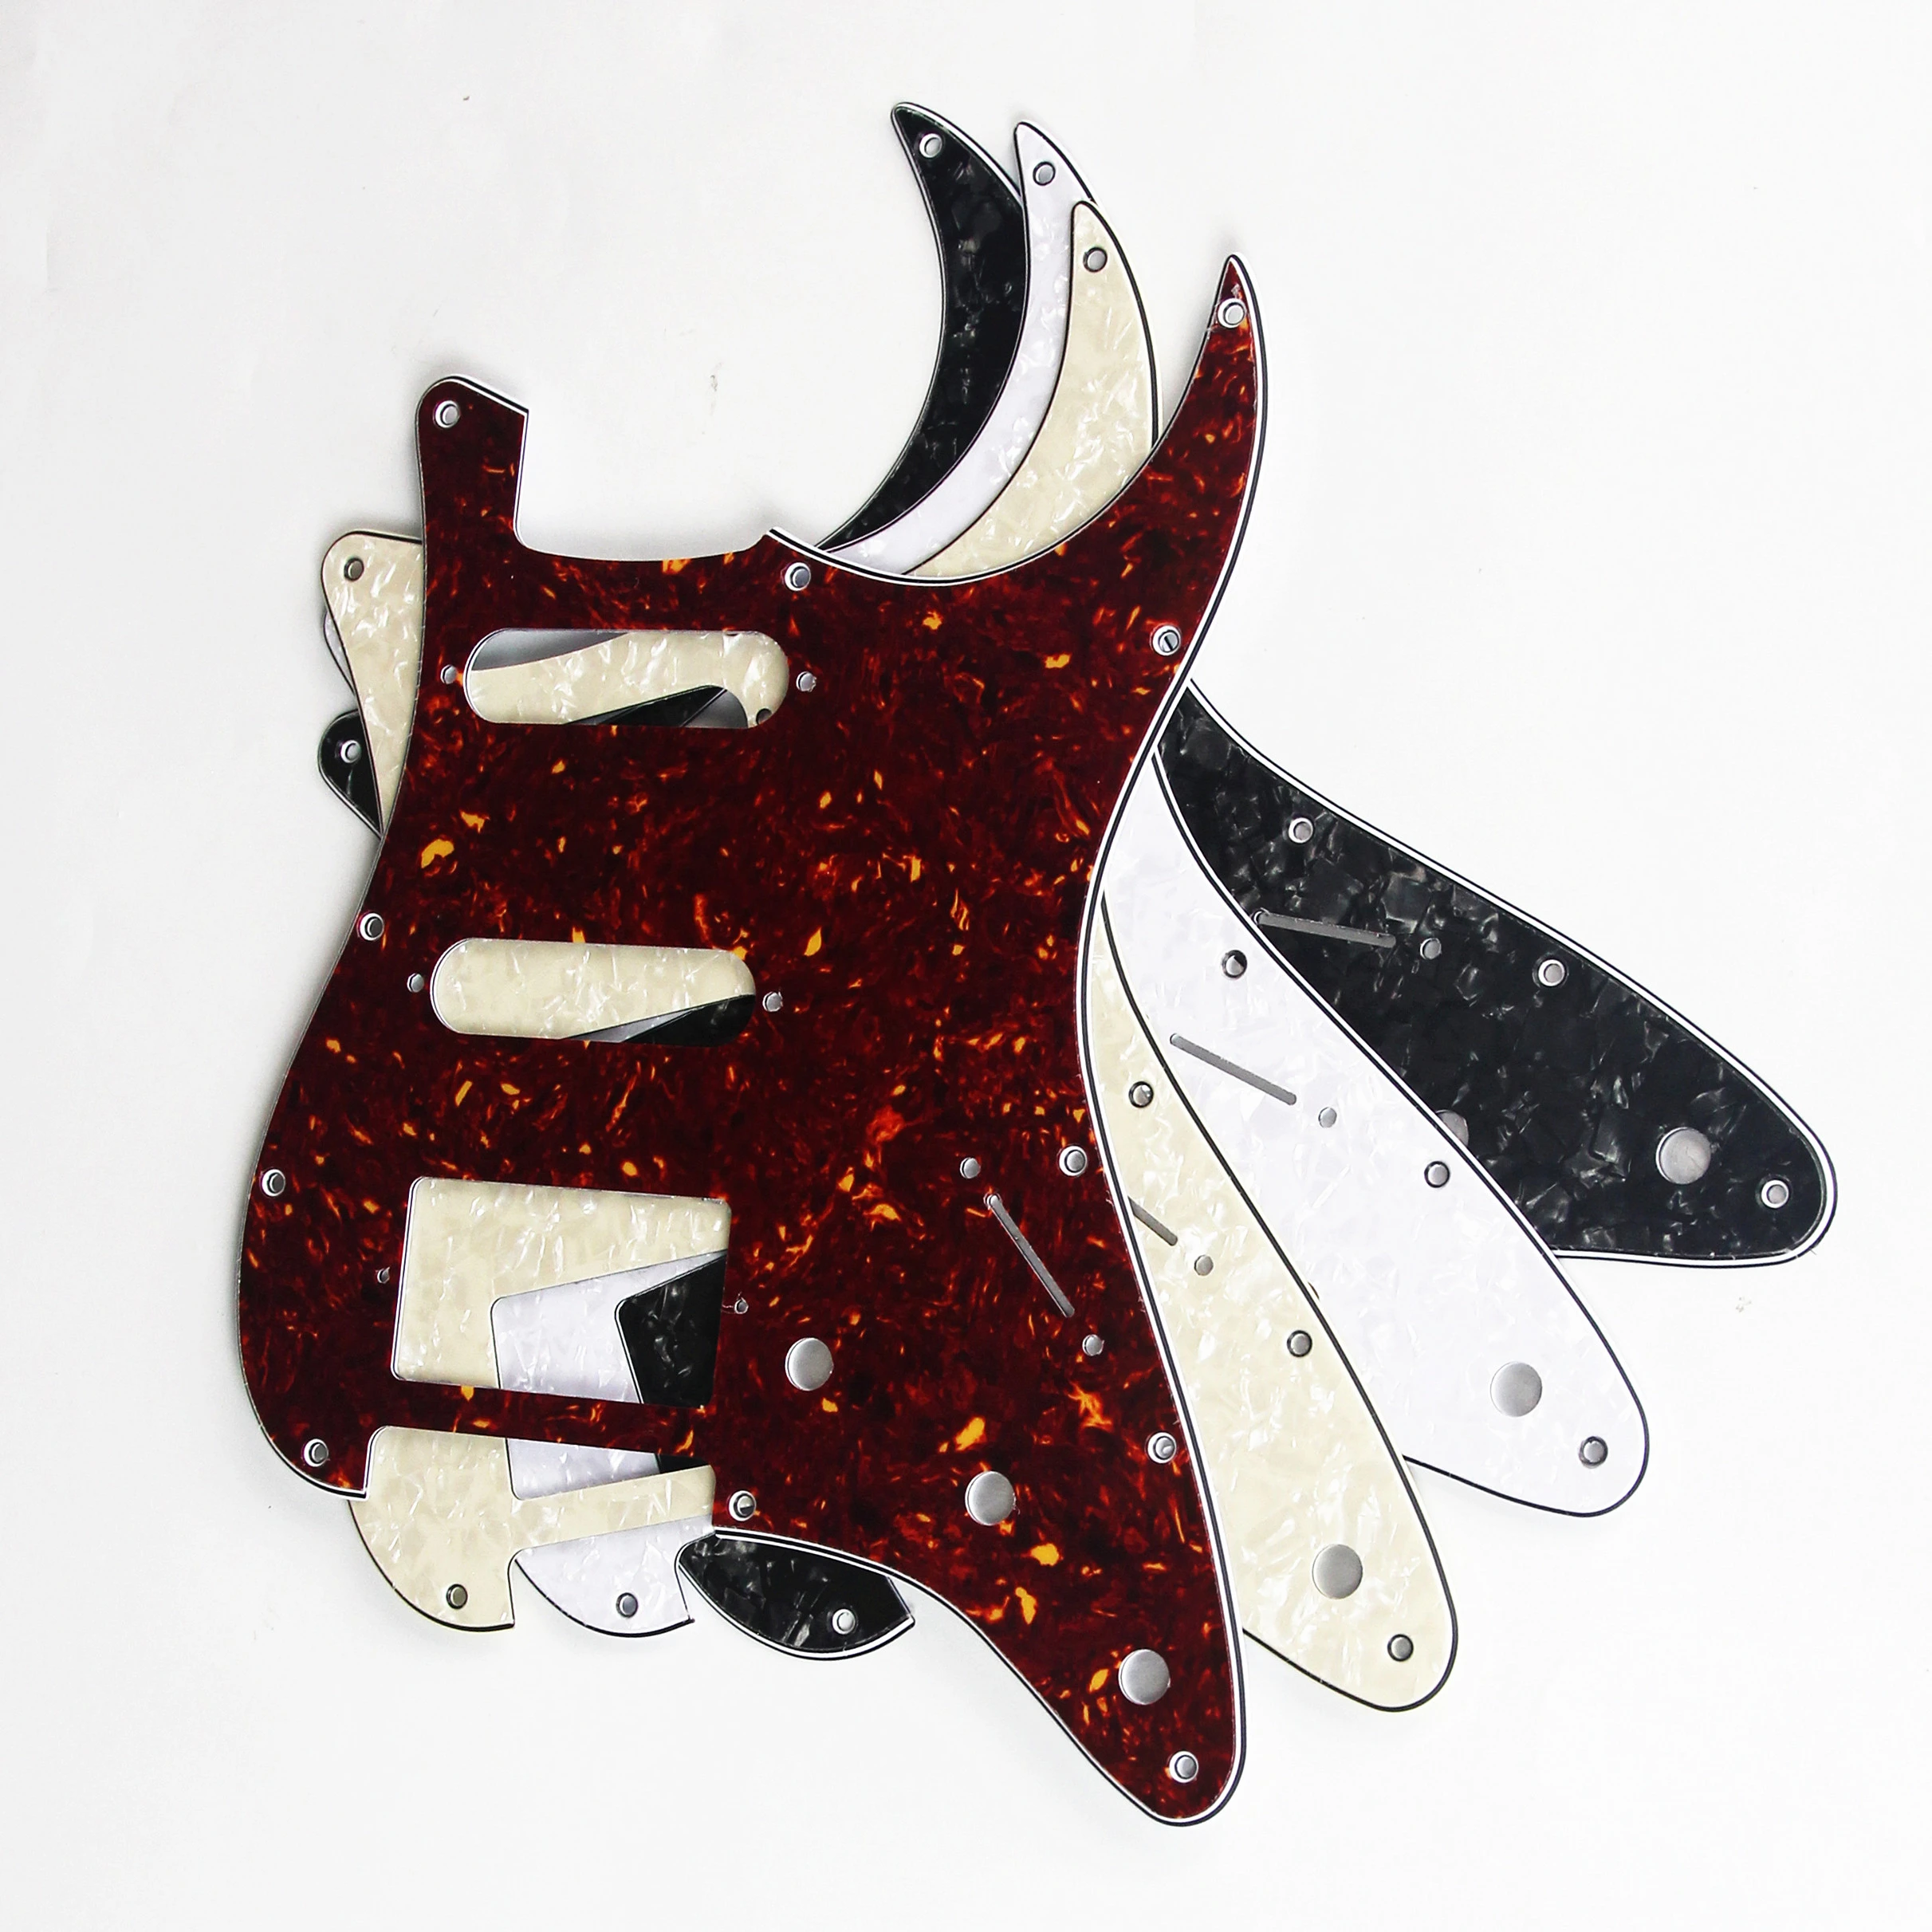 FLEOR Set of 11 Holes Electric Guitar Pickguard SSH HSS Guitar Scratch Plate & Screws Fit ST Guitar Parts,21 Colors Choose